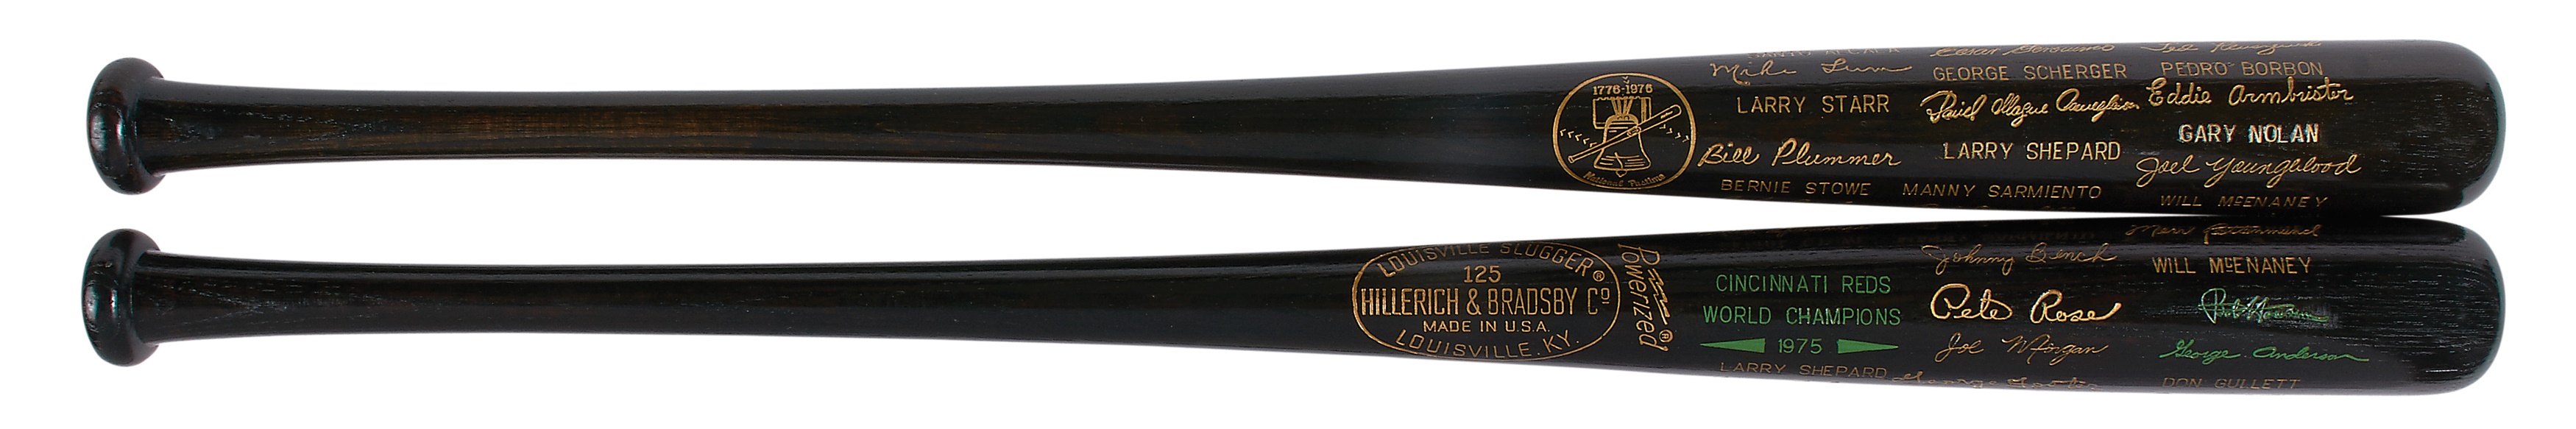 Baseball Equipment - Mint 1975 and 1976 Cincinnati Reds World Series Black Bats